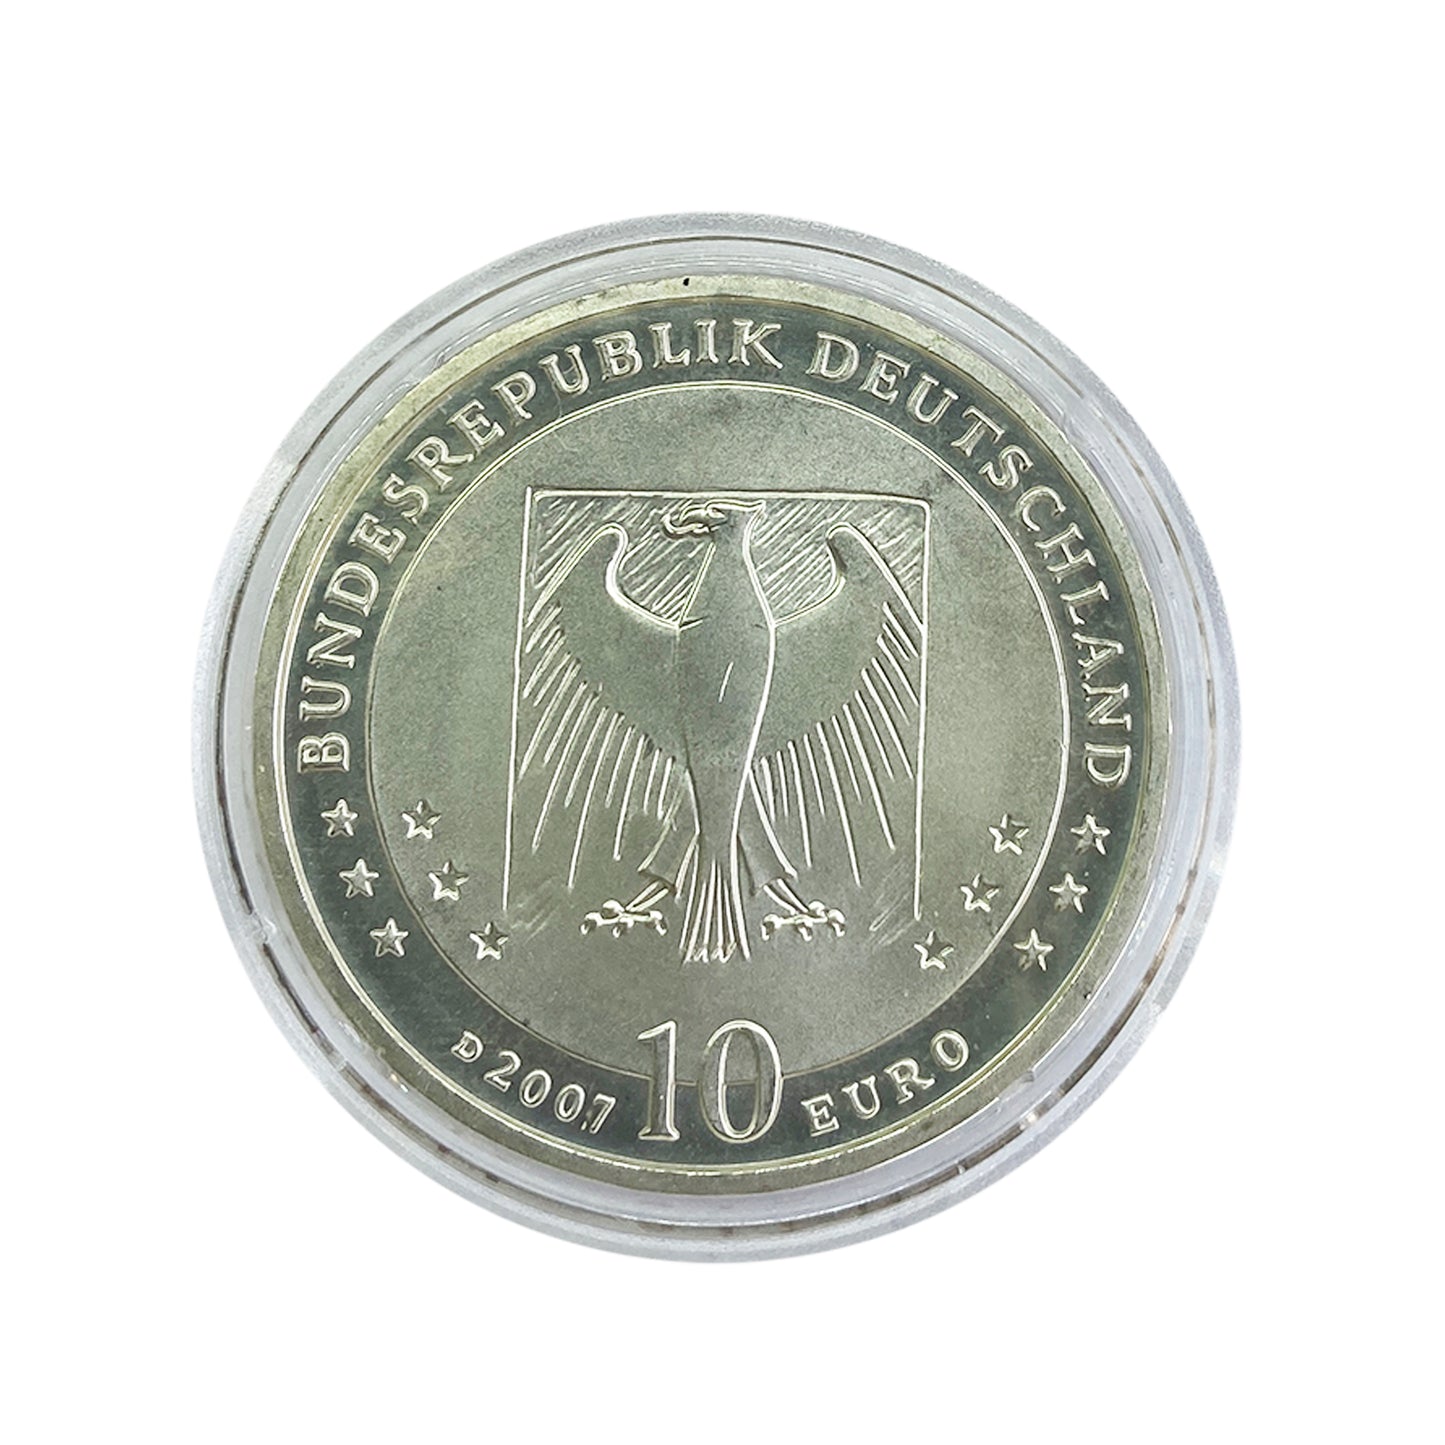 Alemania - Moneda 10 euros plata 2007 - Wilhelm Busch